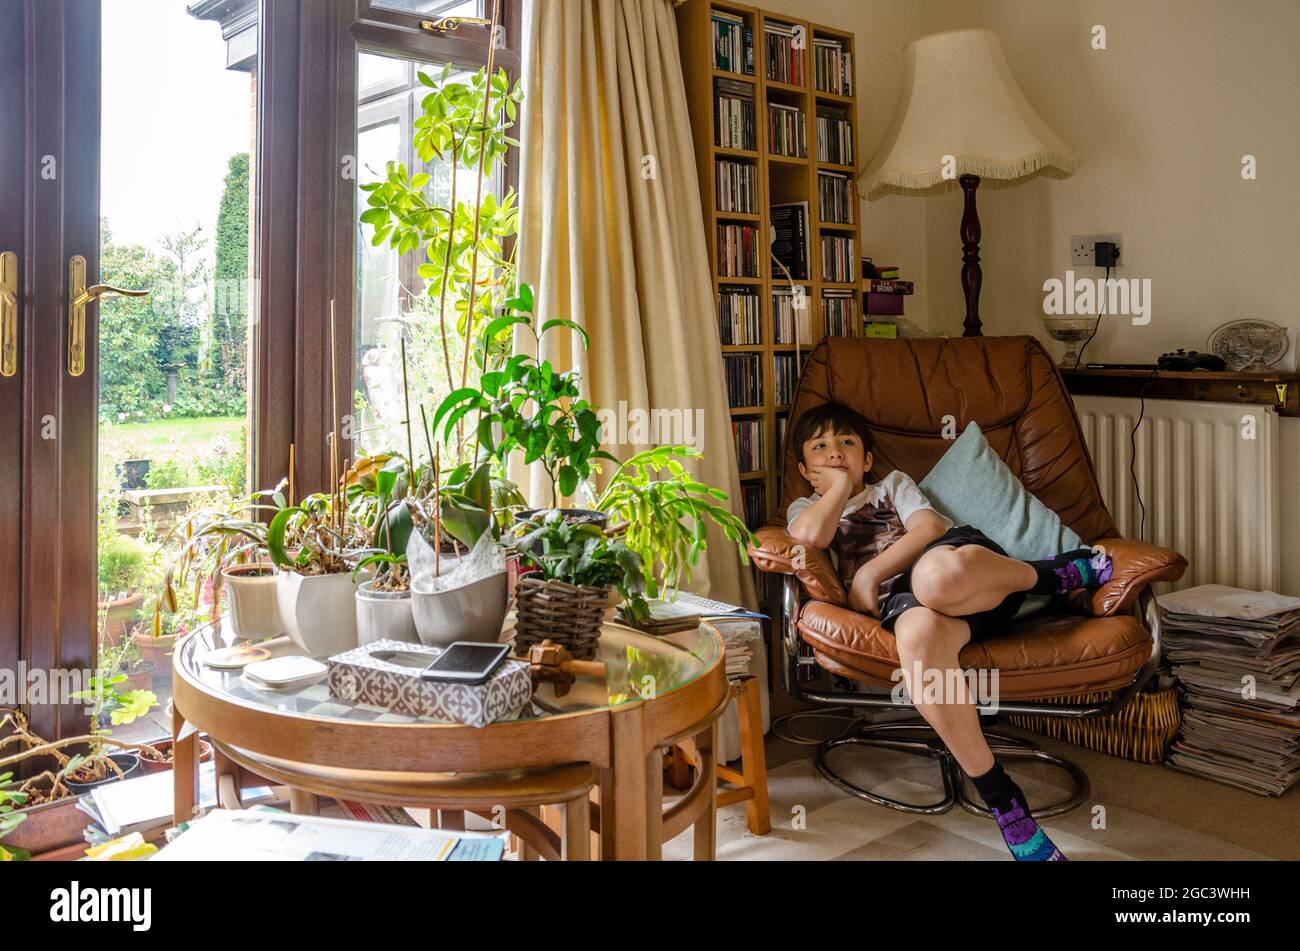 Un garçon se détend dans une chaise confortable avec une table en verre couverte de plantes à l'avant. Une ambiance familiale. Banque D'Images